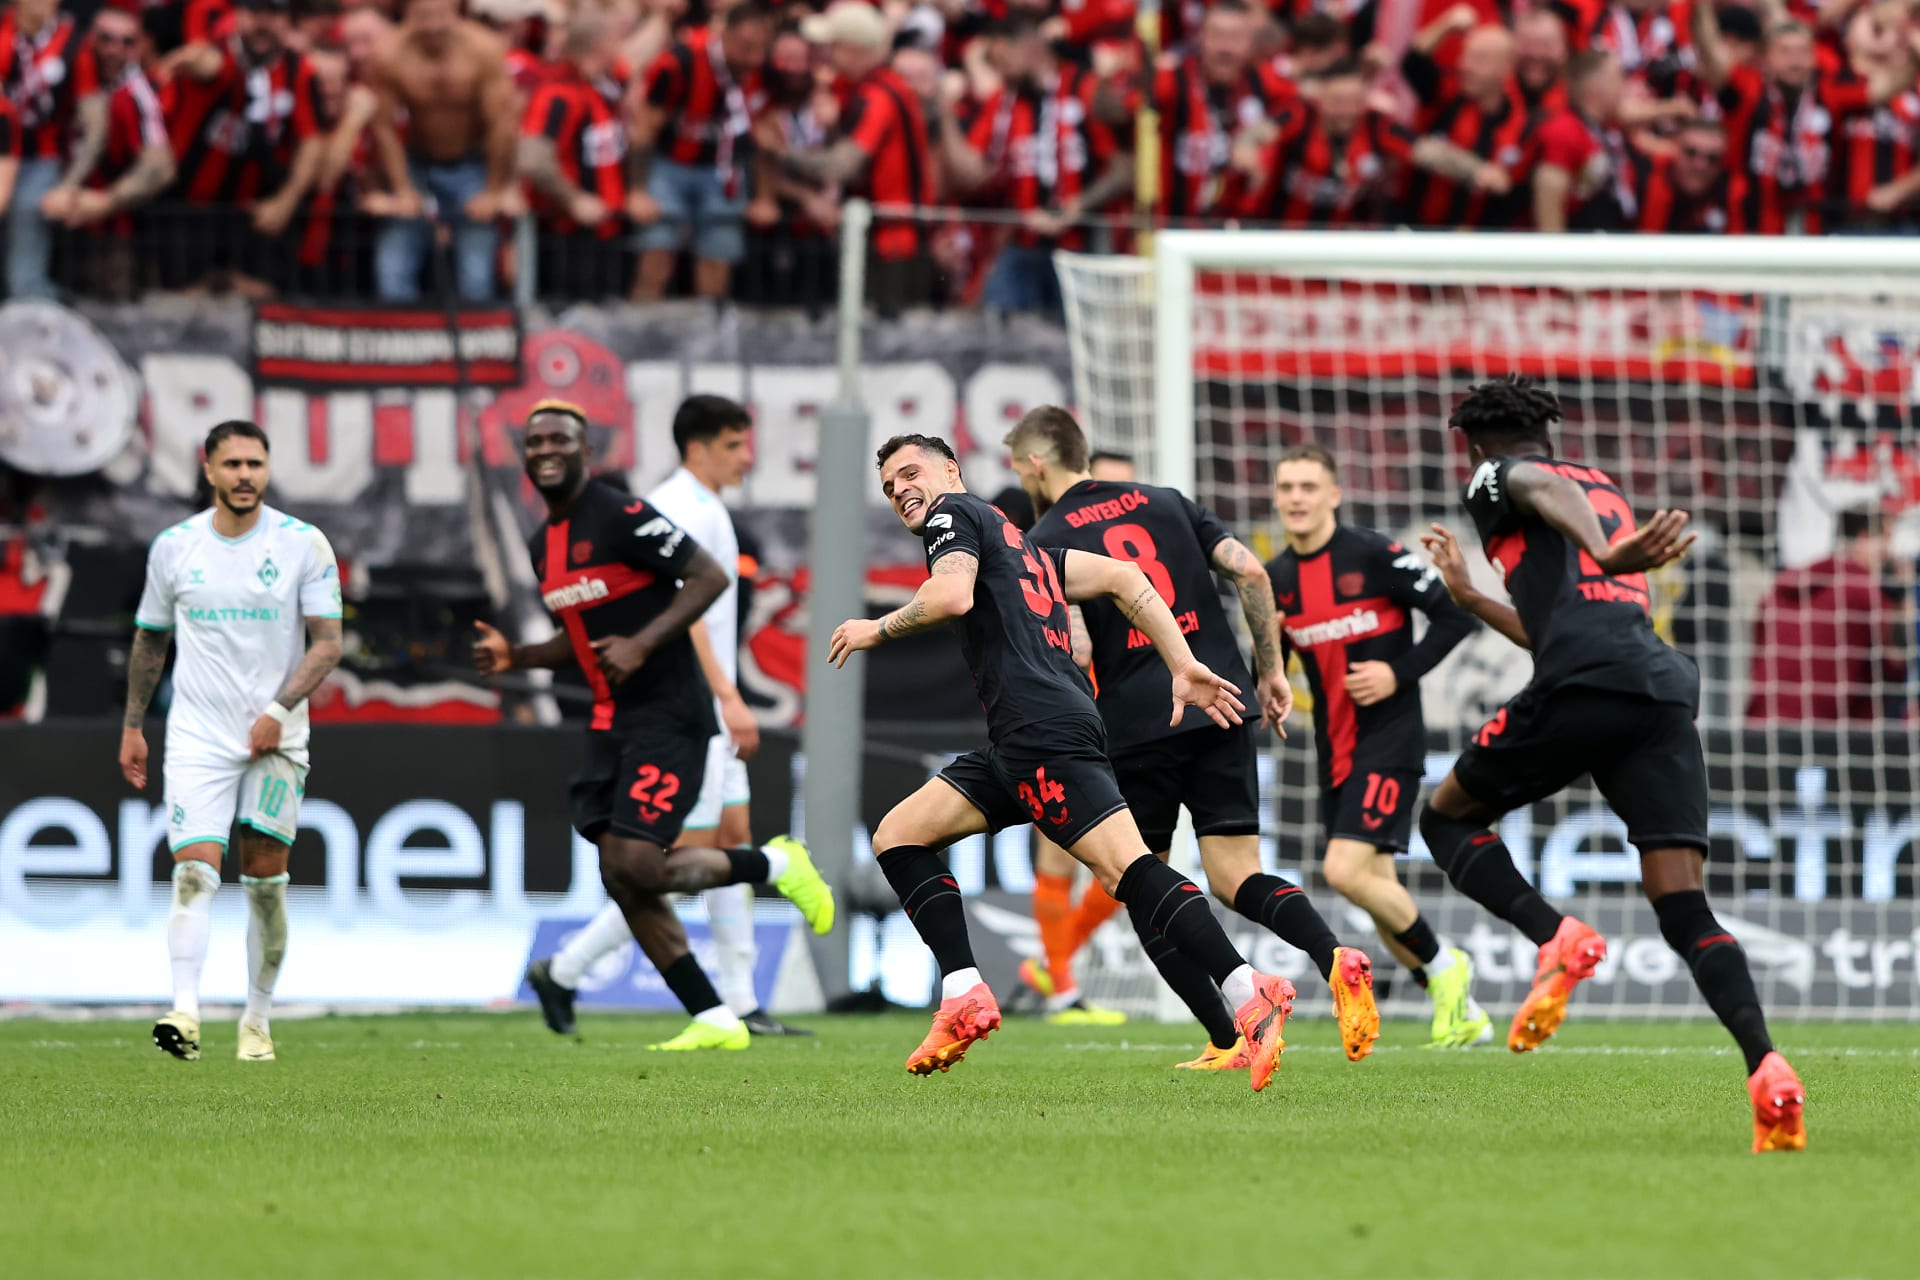 نادي باير ليفركوزن يحقق لقب الدوري الألماني للمرة الأولى في تاريخه